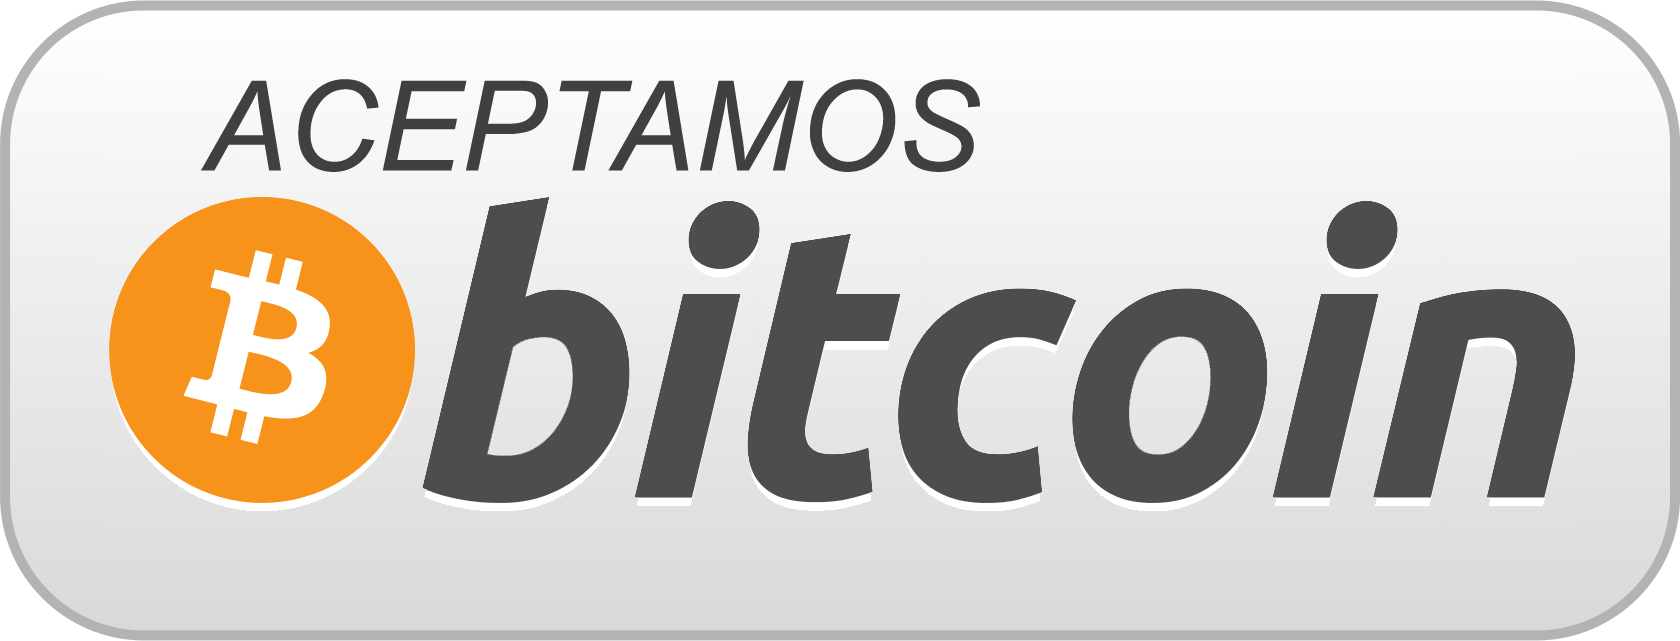 aceptamos bitcoin comercios